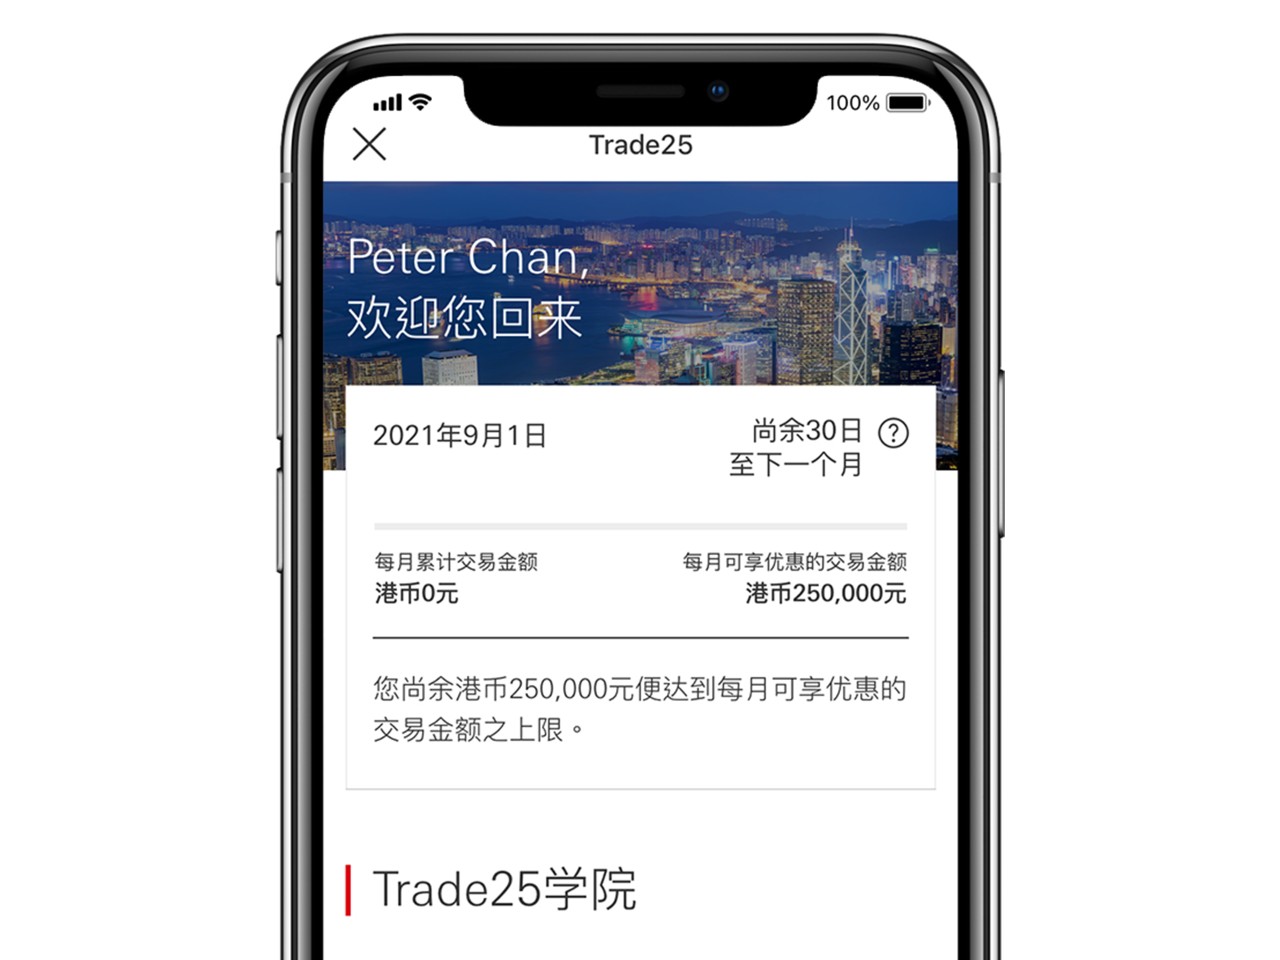  汇丰汇丰Trade25应用程序截图；显示汇丰Trade25页面。